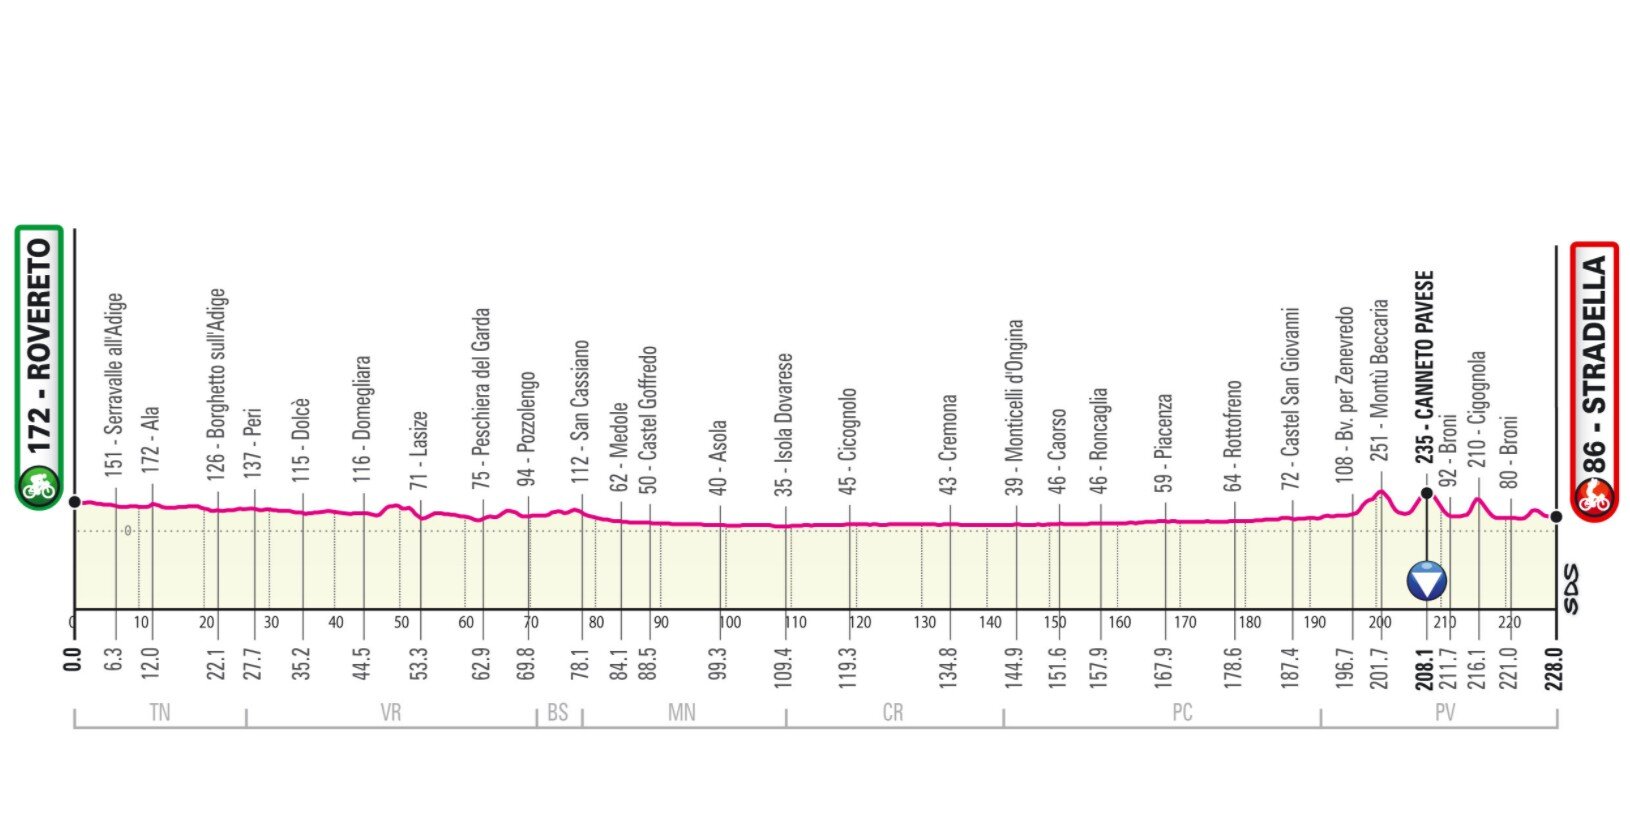 Etapa 18 Giro Italia 2021